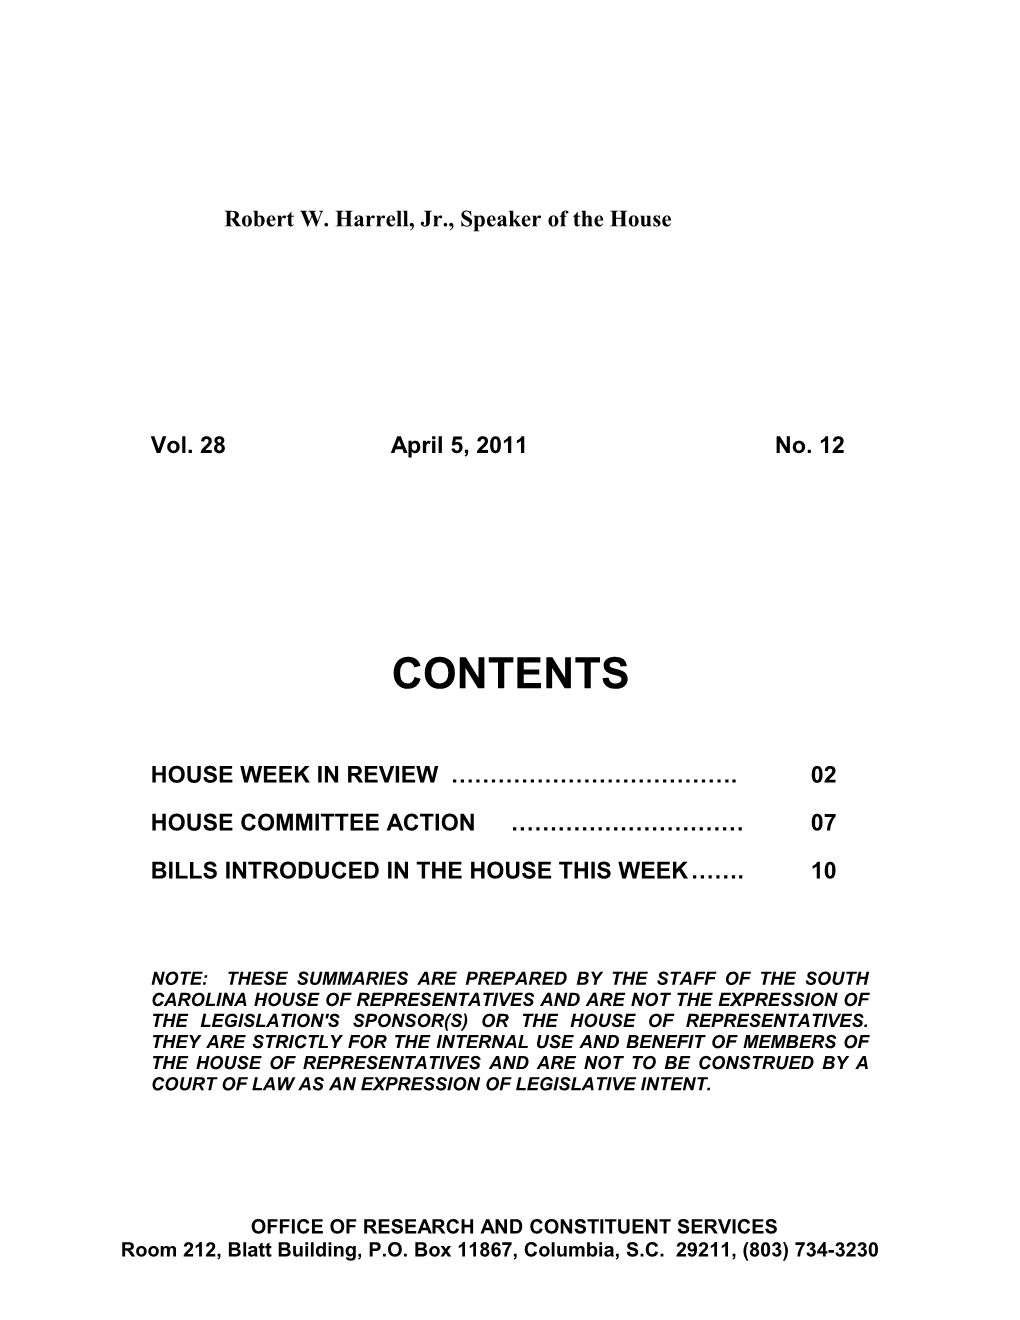 Legislative Update - Vol. 28 No. 12 April 5, 2011 - South Carolina Legislature Online